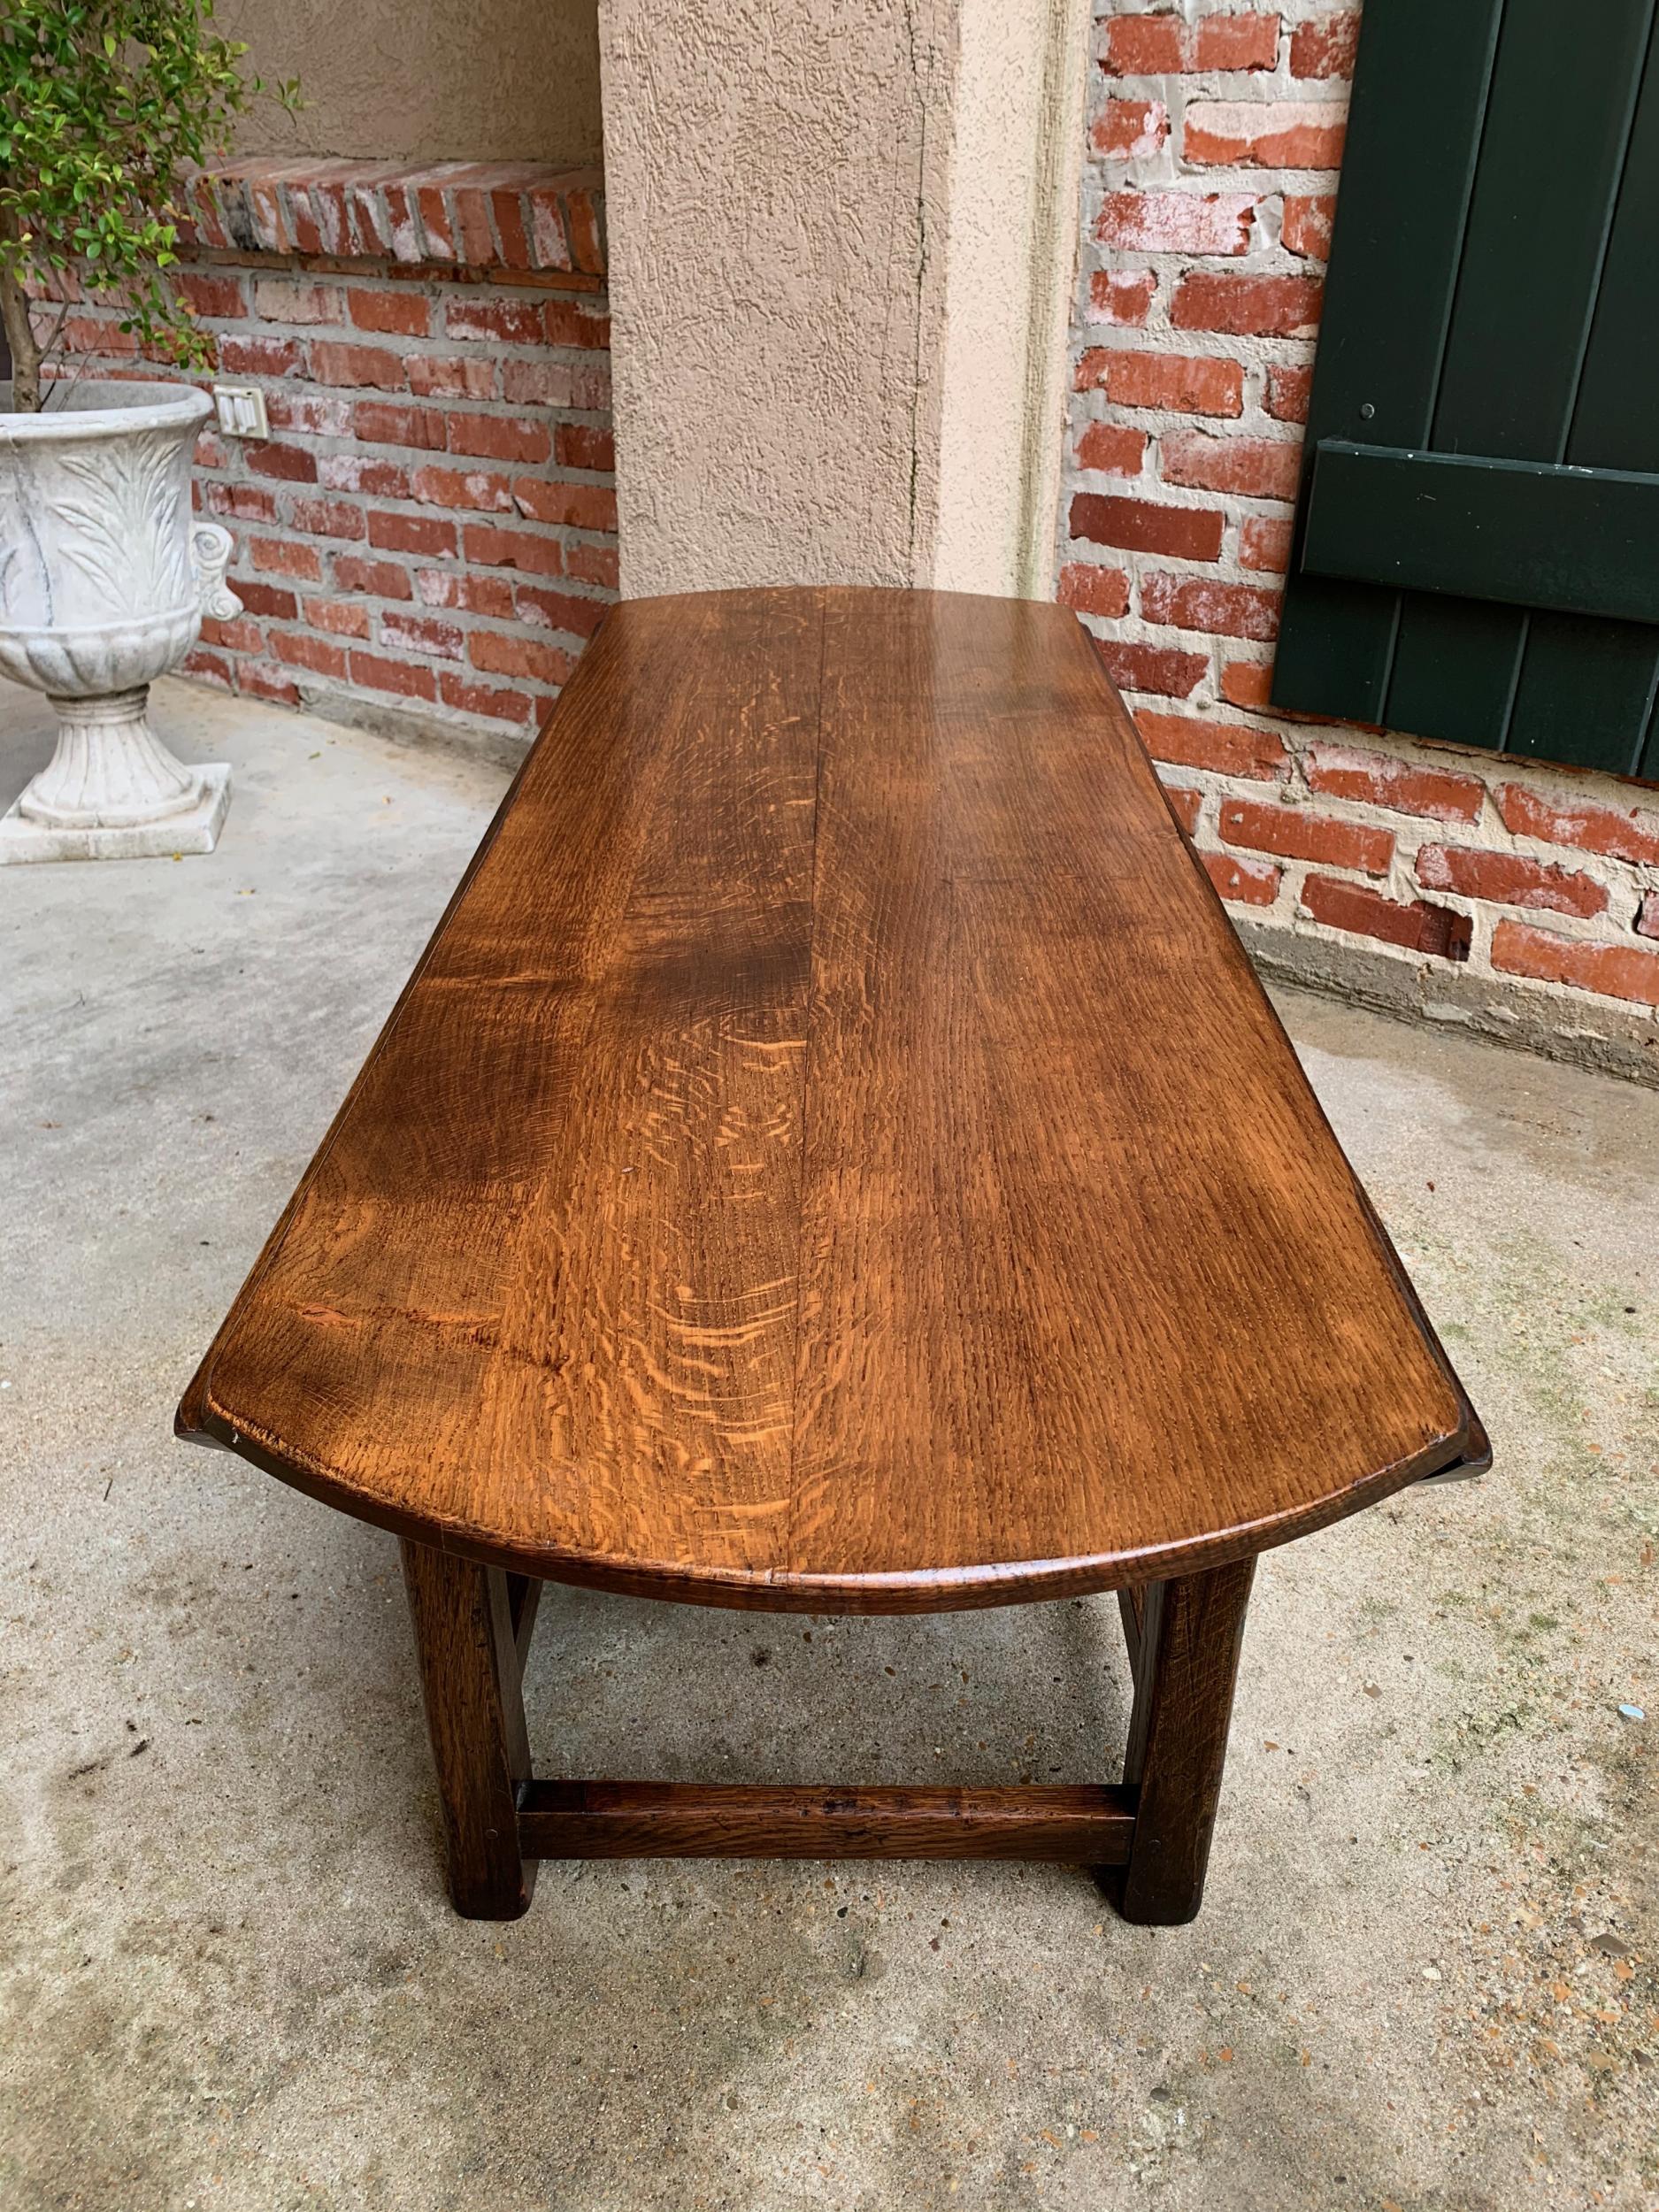 Vintage English Coffee Table Slender Drop Leaf Wake Table Oval Mid Century 1